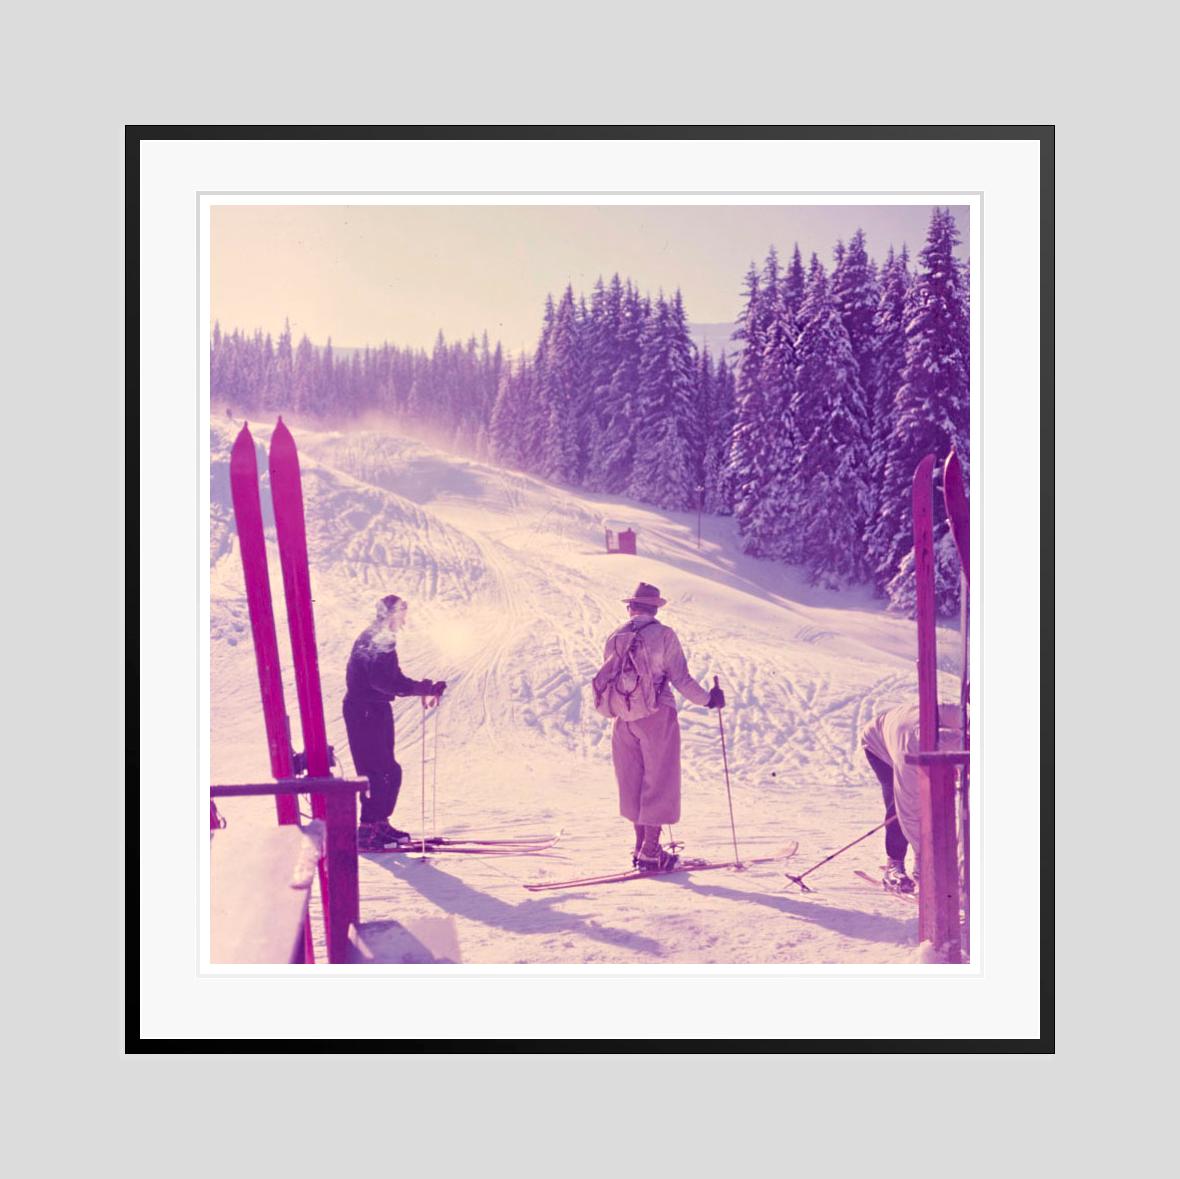 Bergspitze 

1954

Zwei Skifahrer bereiten sich auf den Beginn ihrer Abfahrt vor, Klosters, Schweiz, 1954. (Toni Frissell)

von Toni Frissell

30 x 30